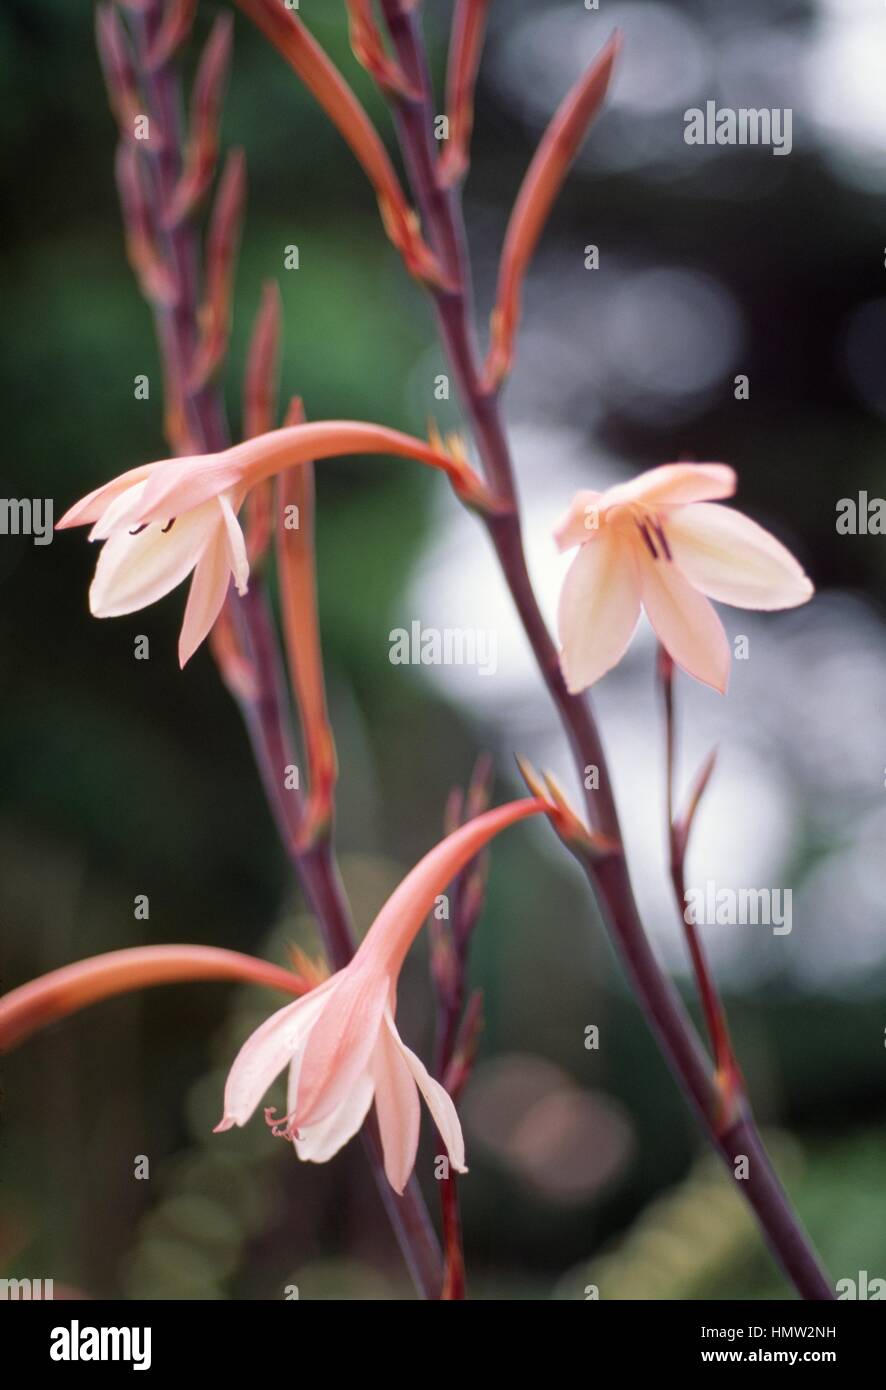 Watsonia tabularis, Iridaceae. Stock Photo